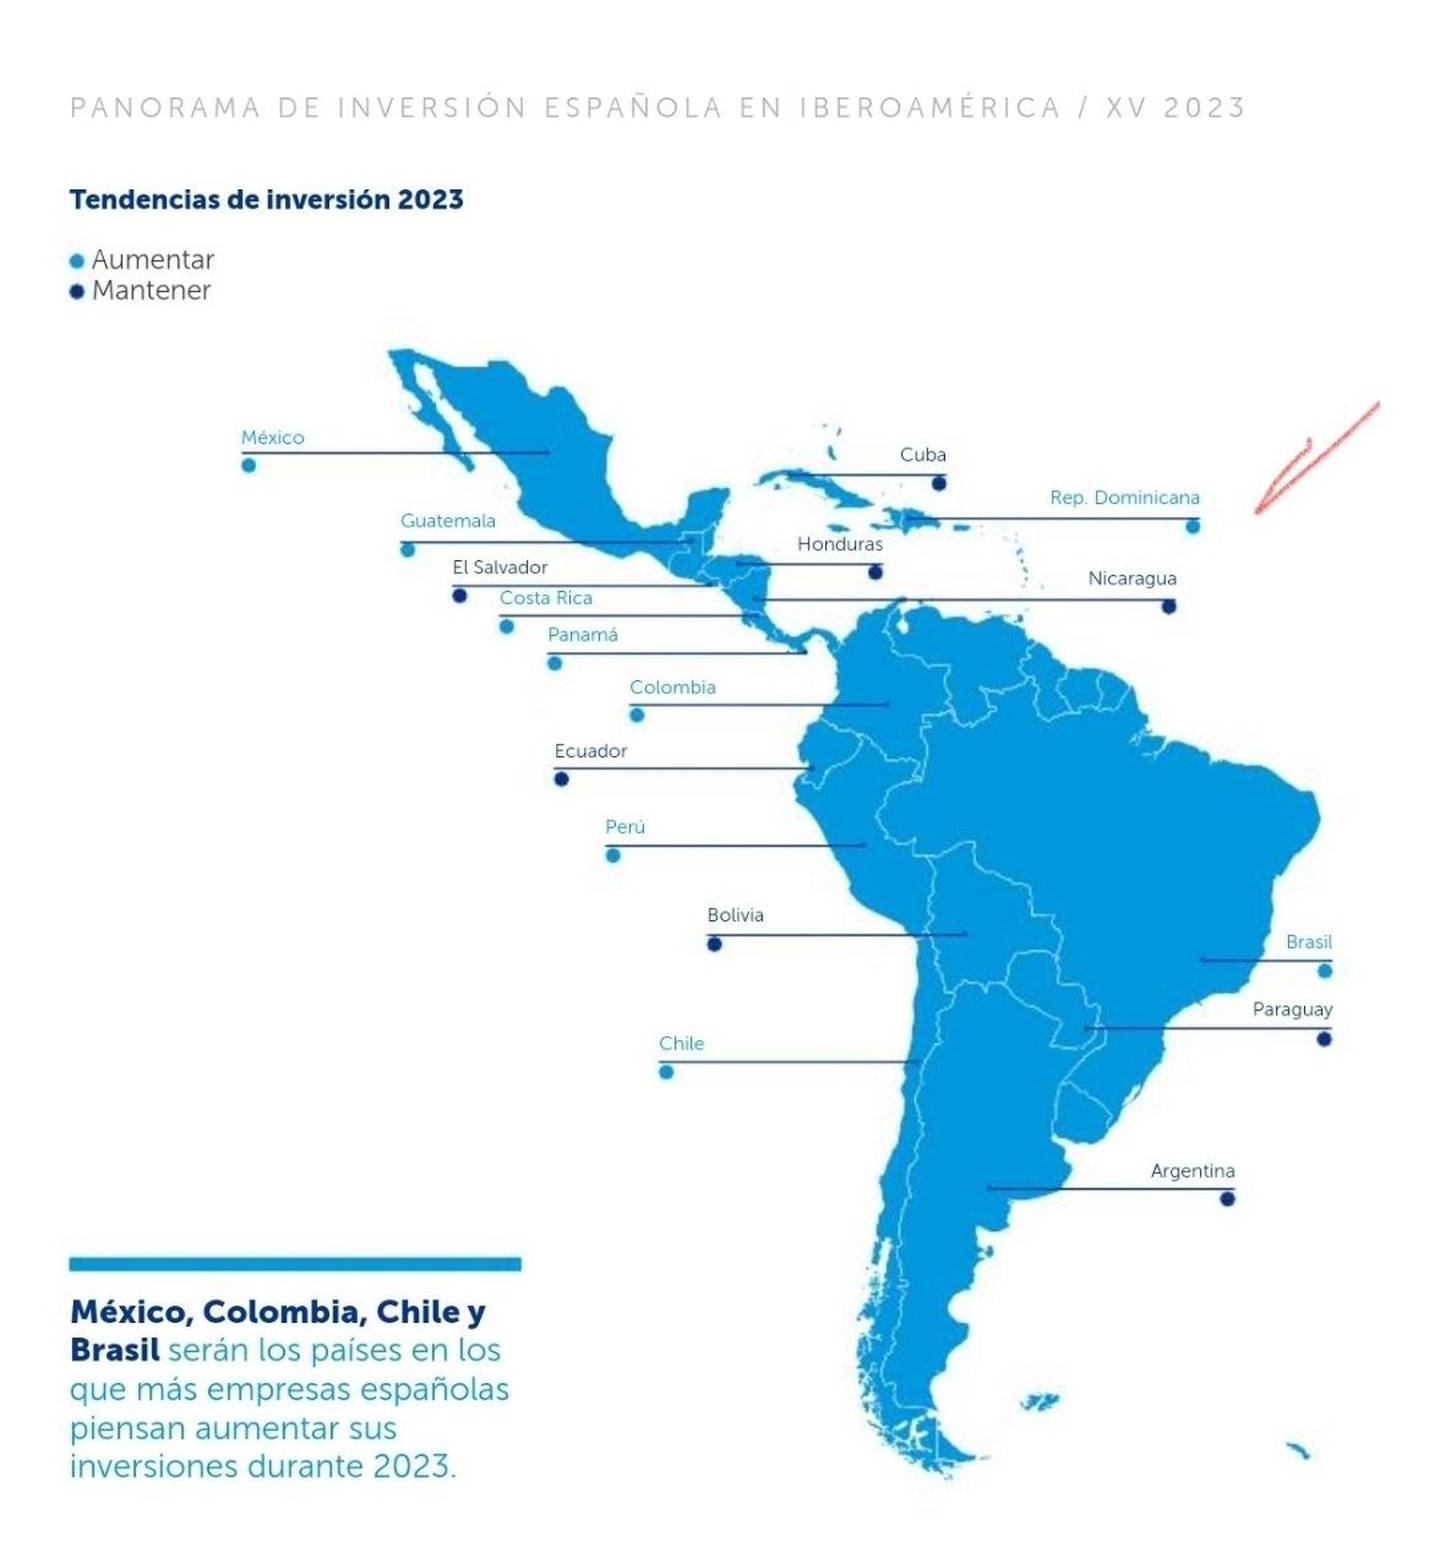 Las tendencias de inversión de las empresas españolas en América Latina y el Caribe.dfd